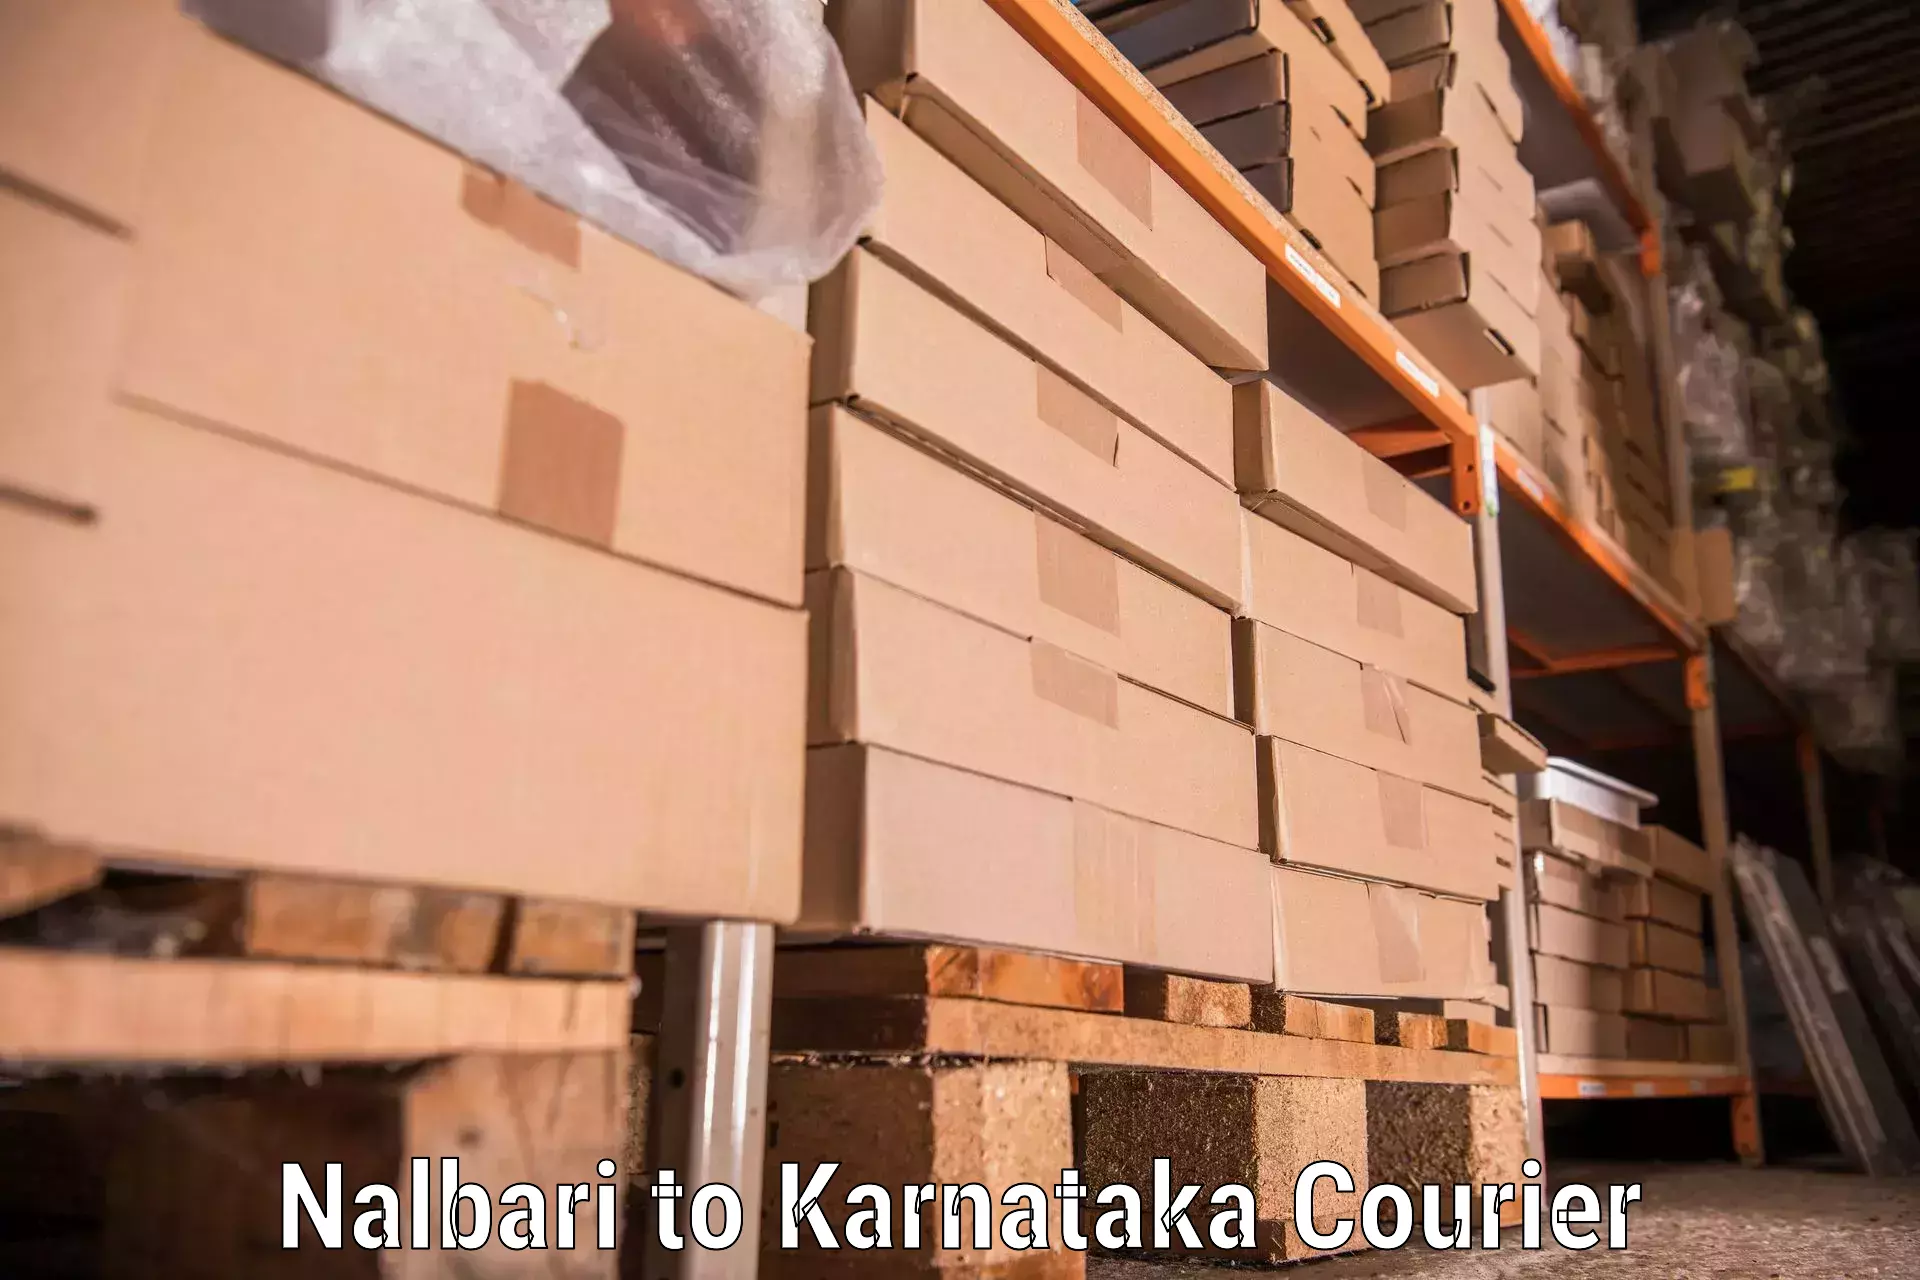 Residential furniture transport Nalbari to Karnataka